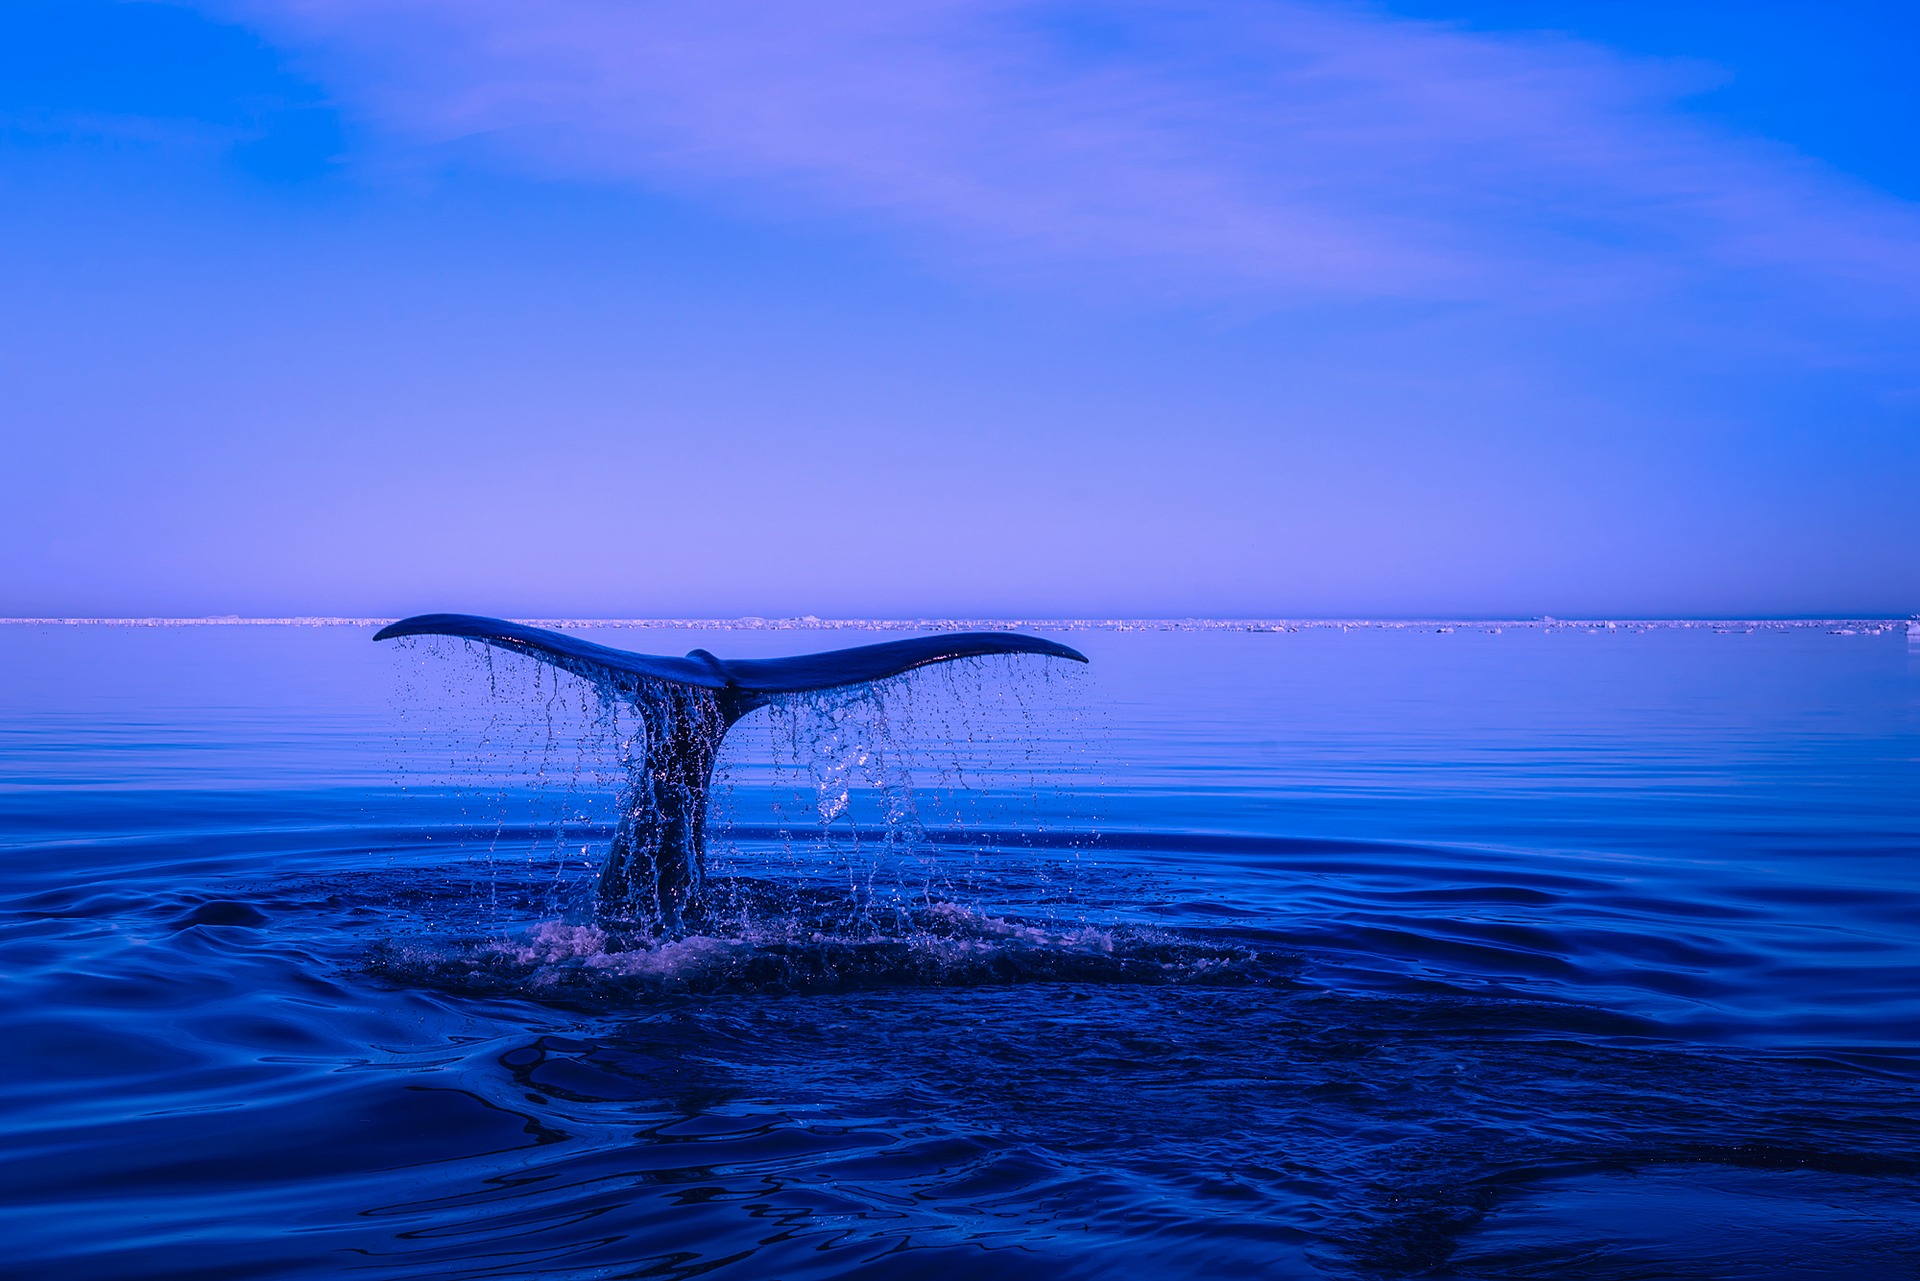 Eine Walfischflosse mit abtropfendem Wasser im tiefblauen Meer